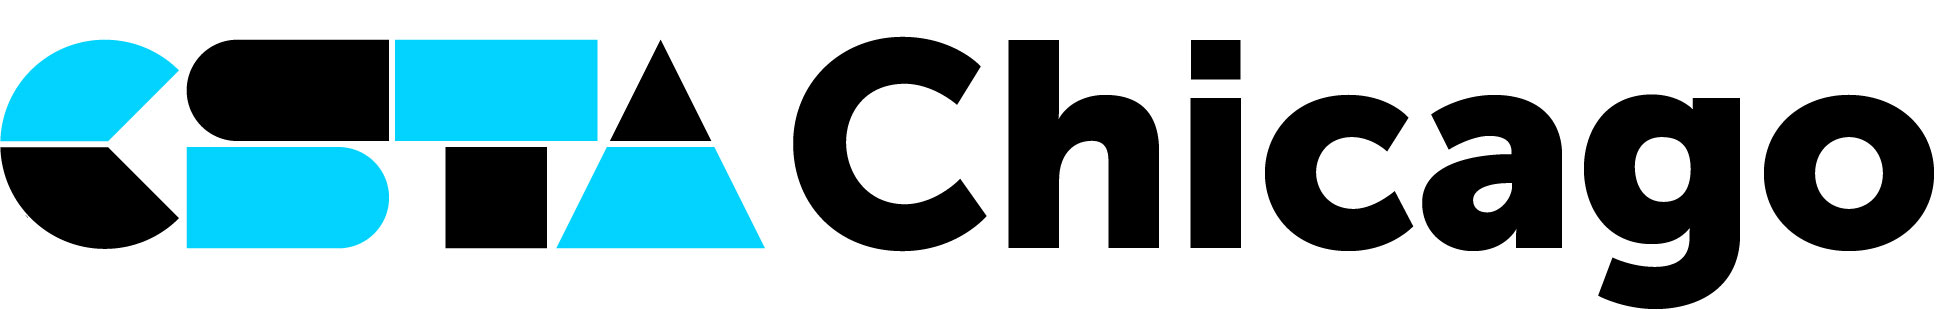 CSTA Chicago logo